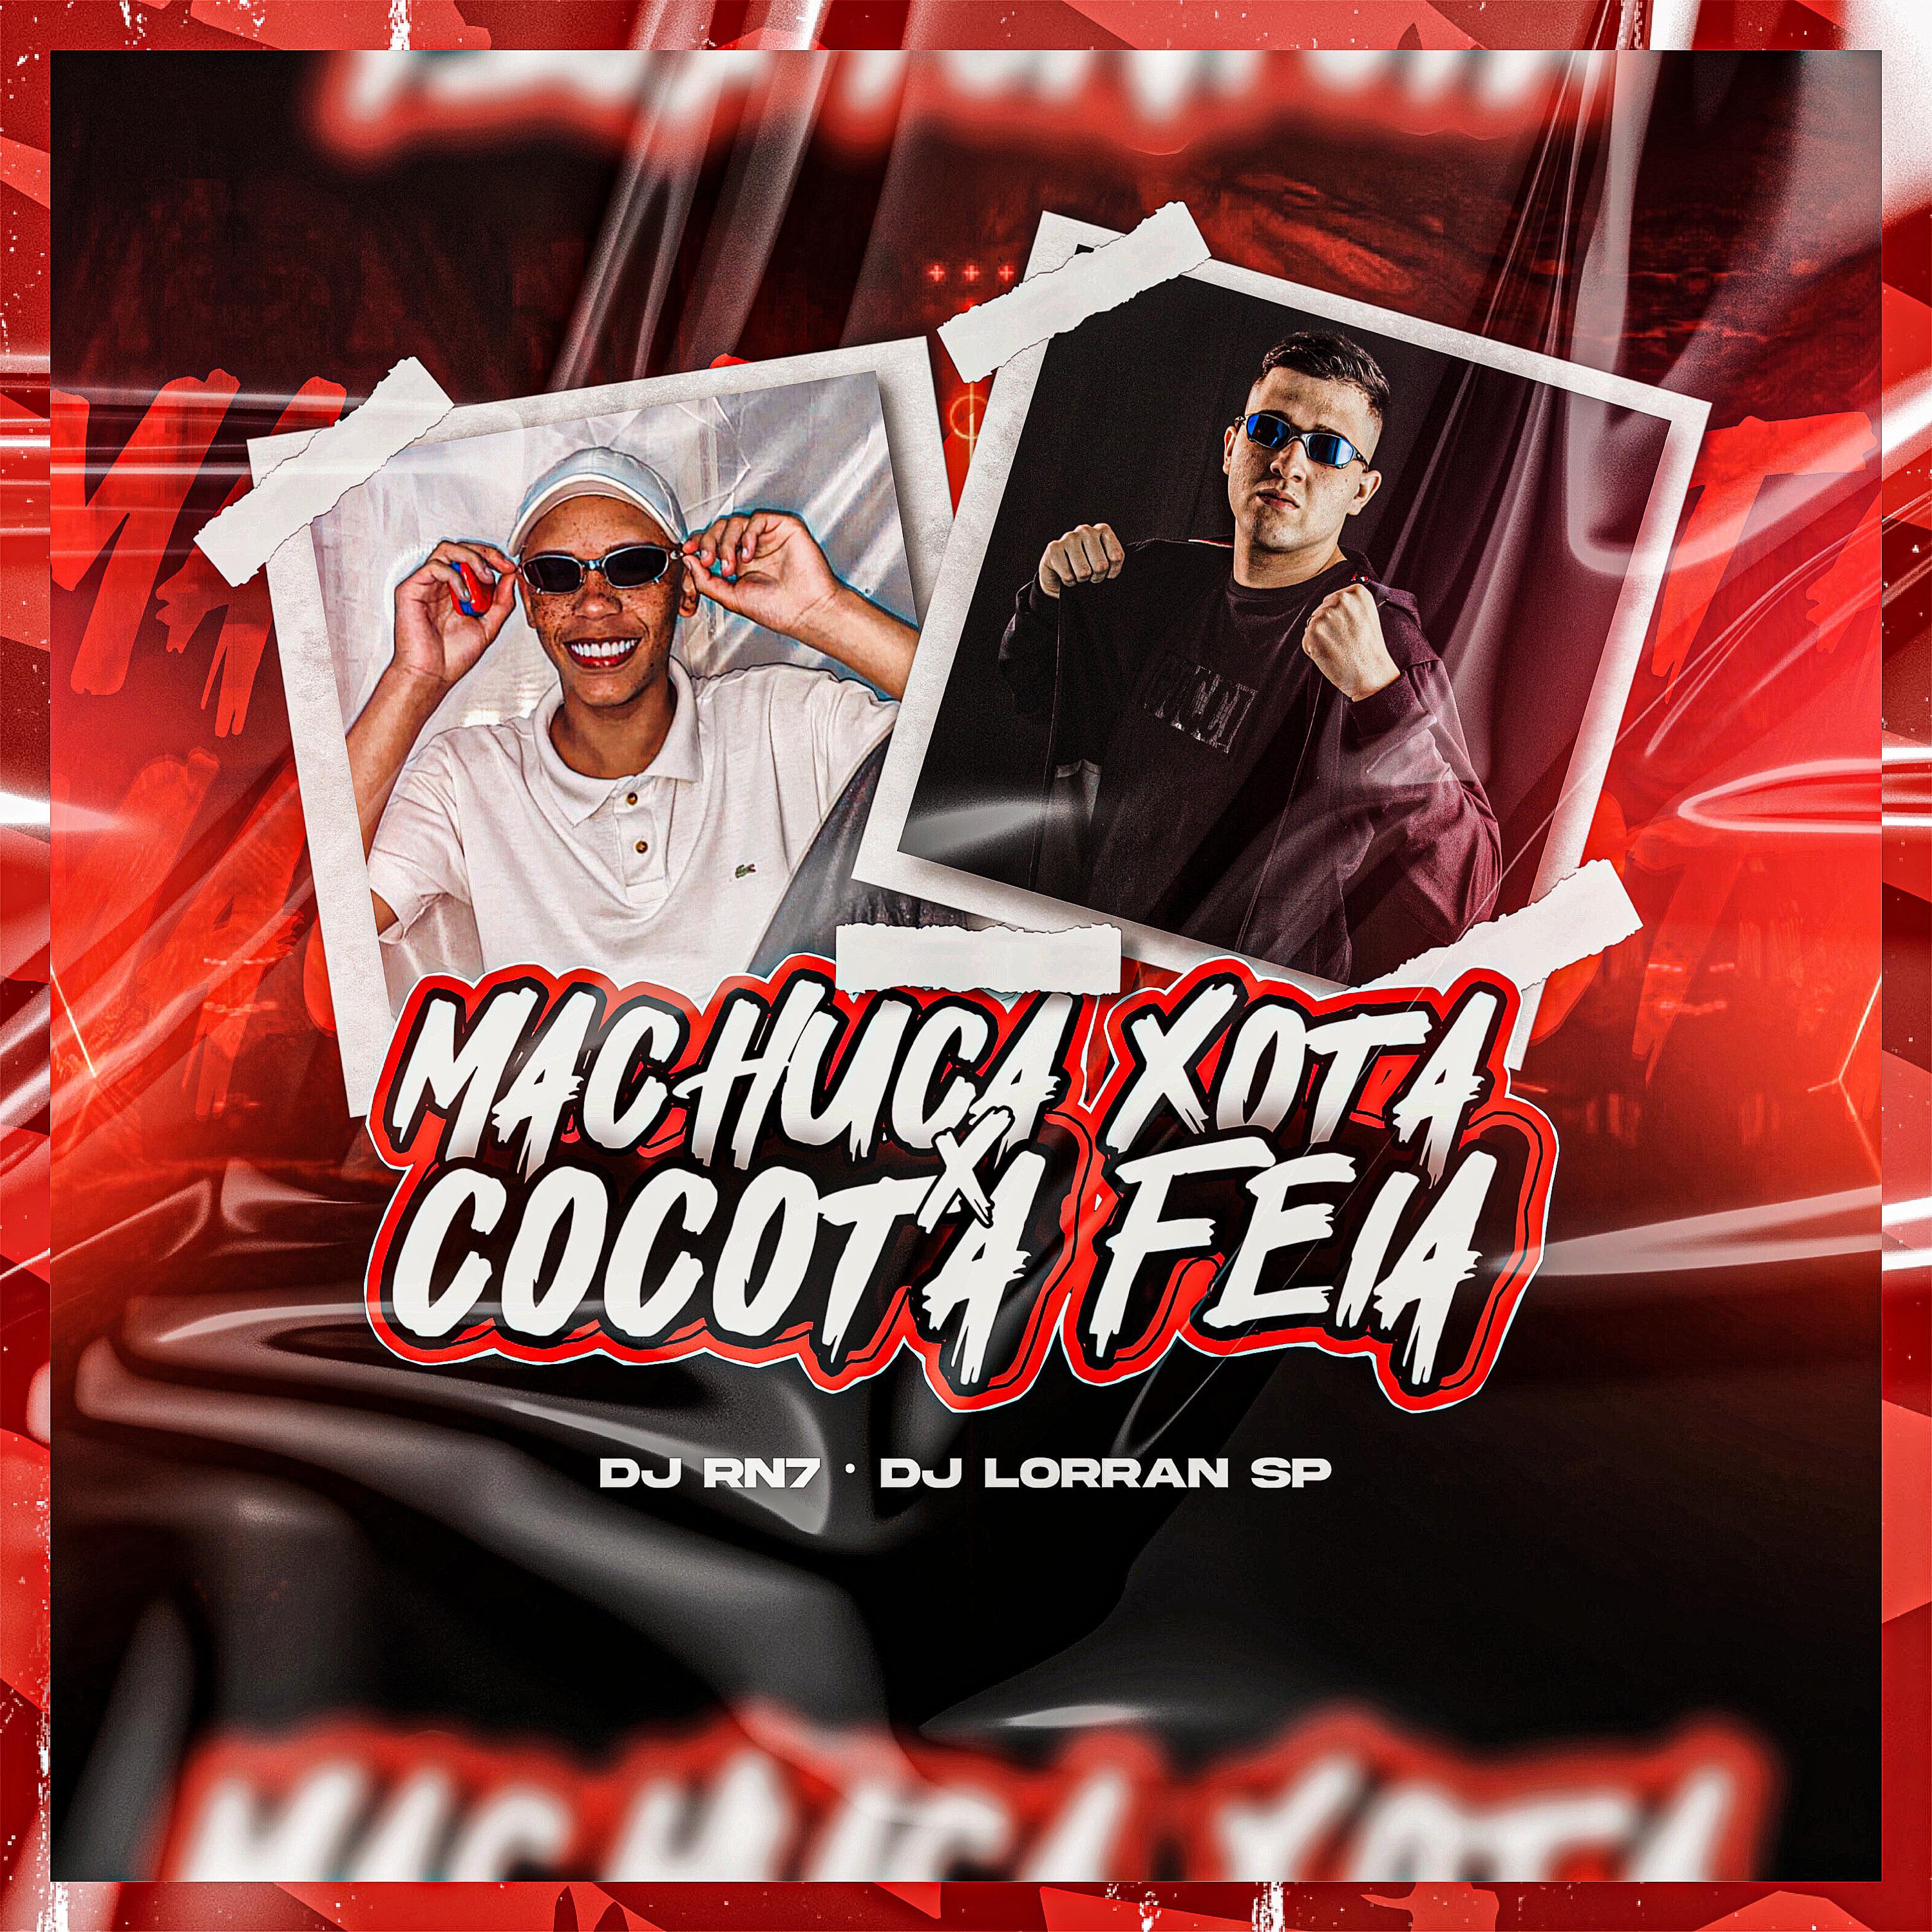 Постер альбома Machuca Xota X Cocota Feia